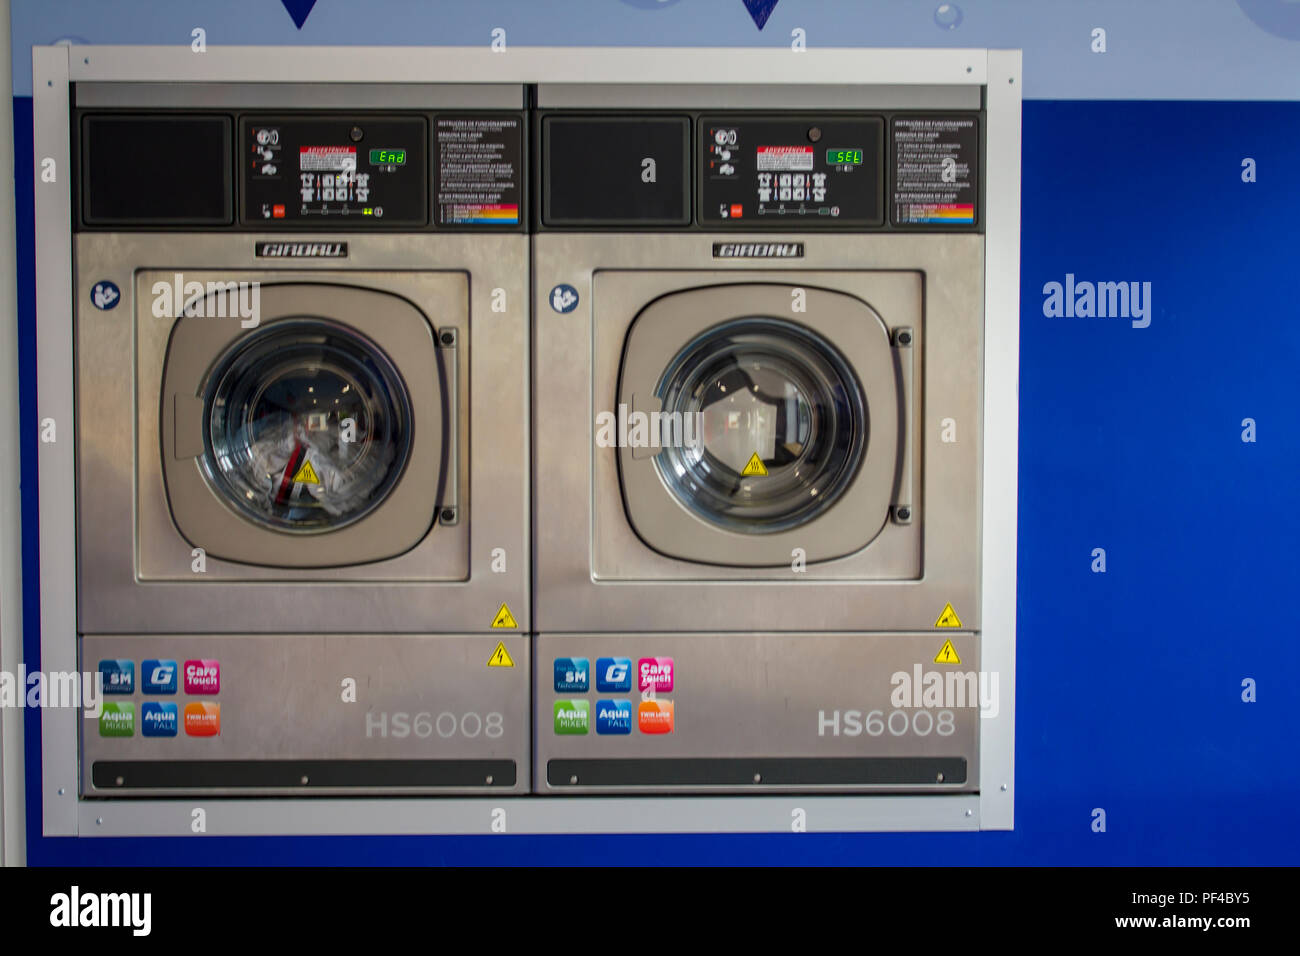 Self service laundry immagini e fotografie stock ad alta risoluzione - Alamy